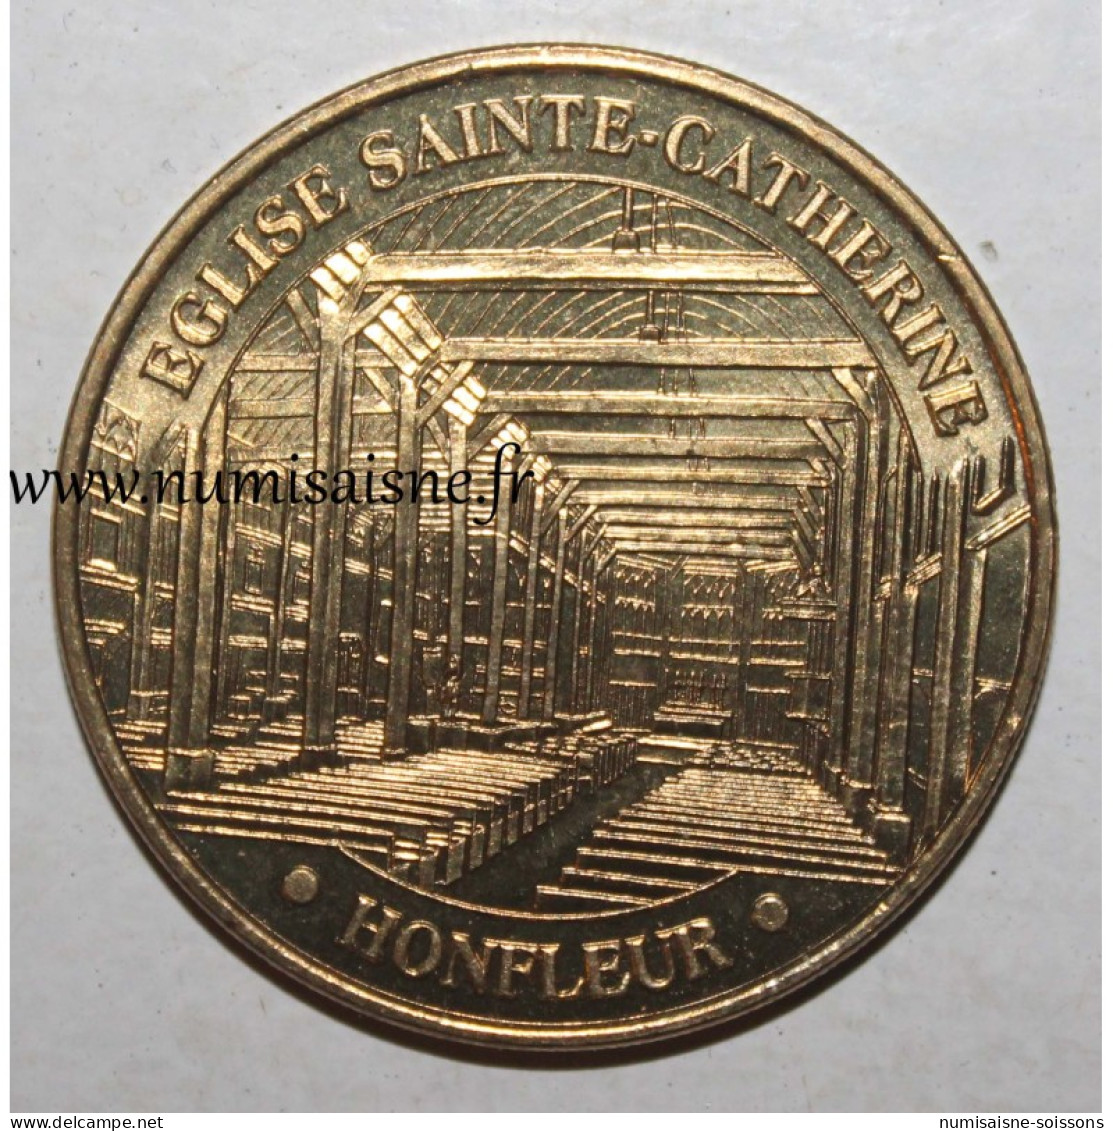 14 - HONFLEUR - ÉGLISE SAINTE CATHERINE - Monnaie De Paris - 2010 - 2010